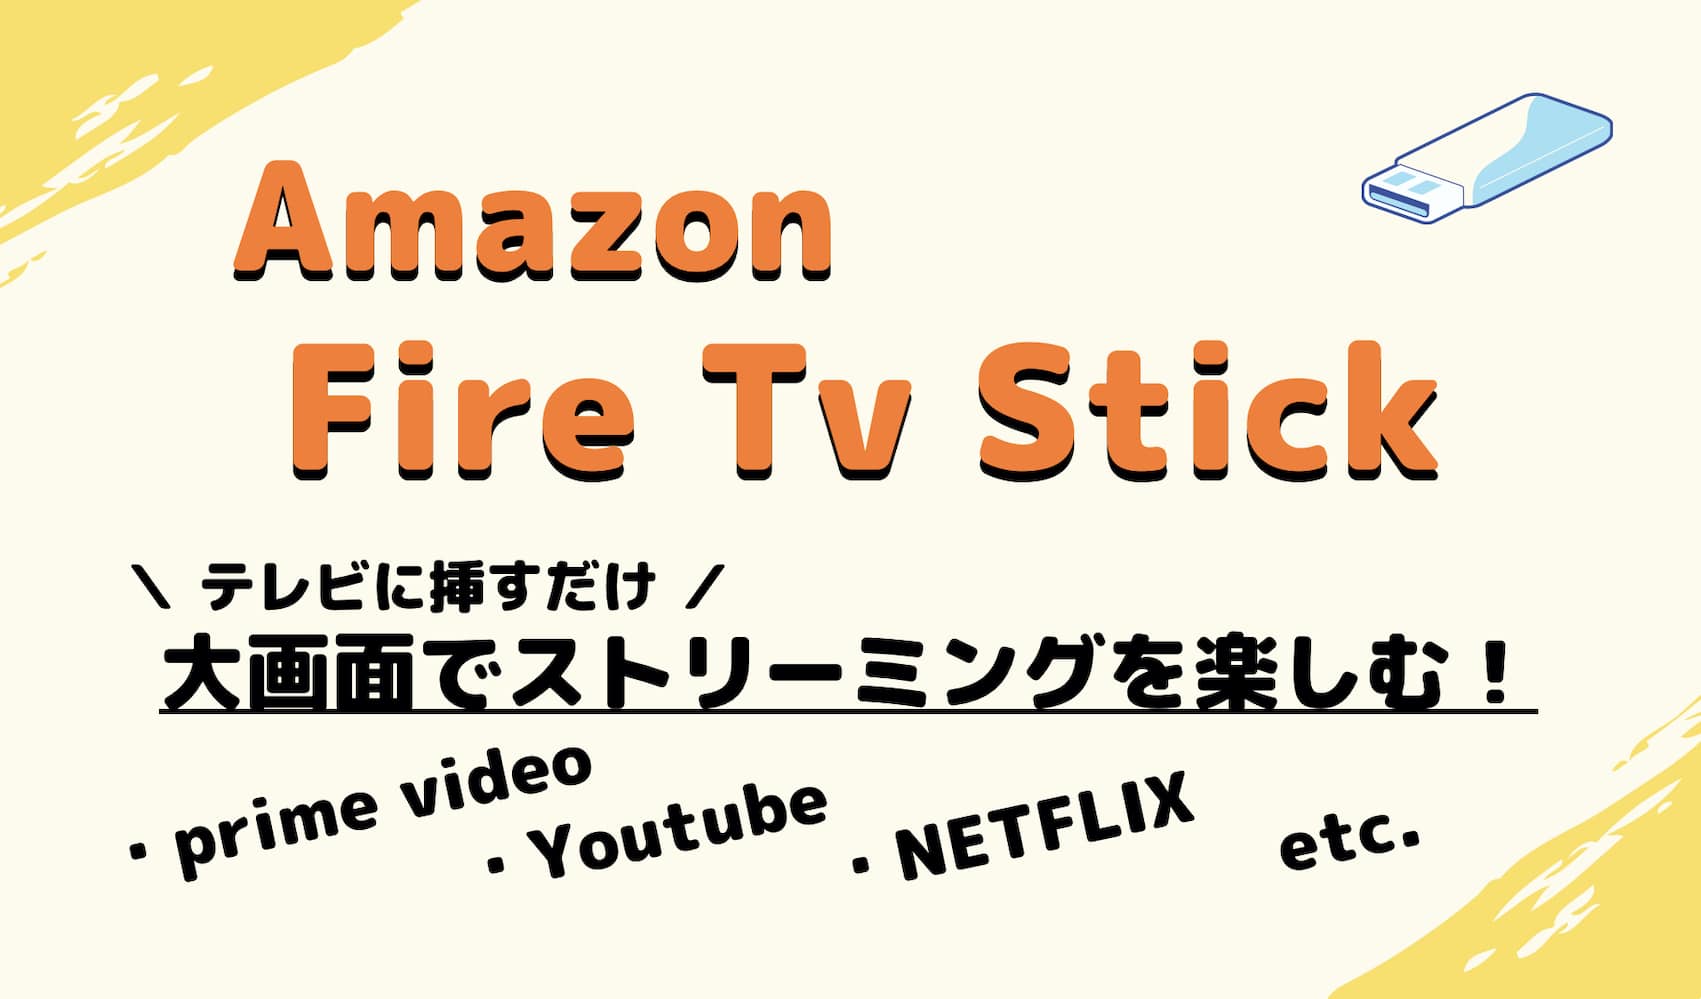 Amazon Fire TV Stickでストリーミングを楽しむ